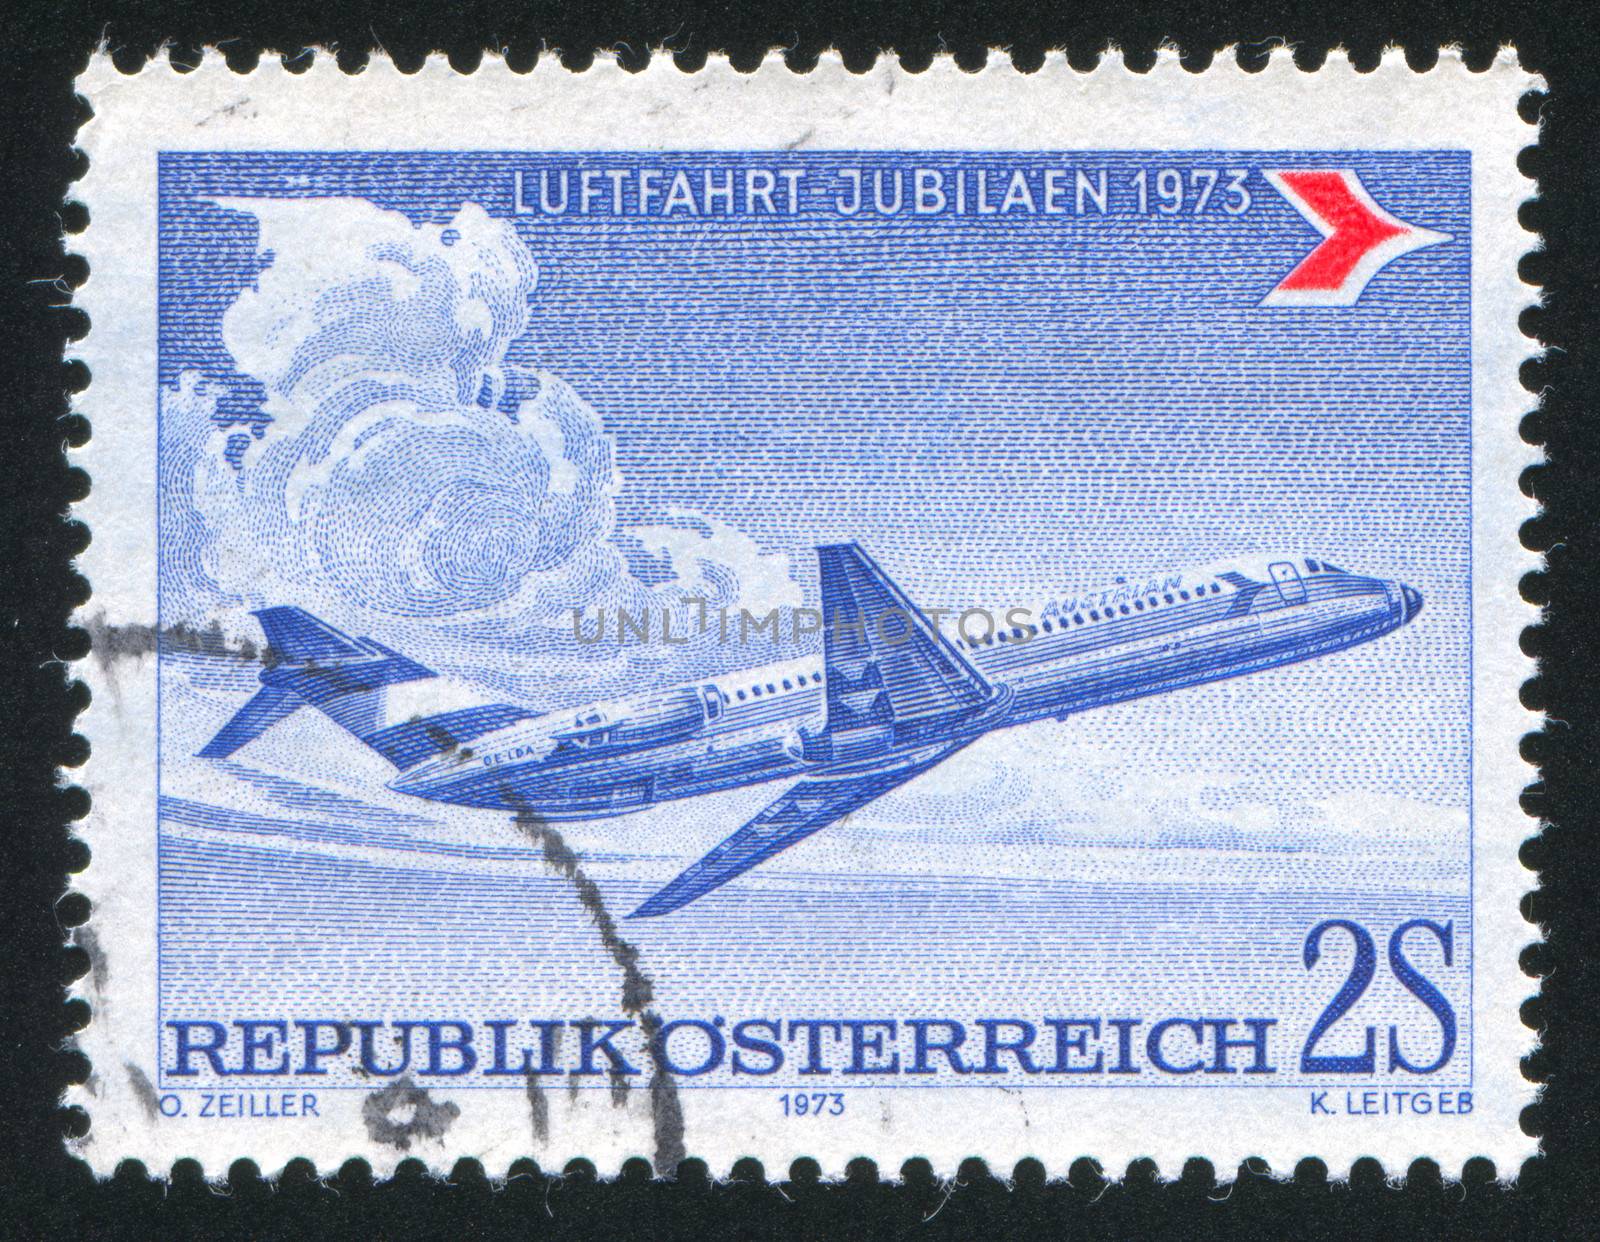 AUSTRIA - CIRCA 1973: stamp printed by Austria, shows Douglas DC-9, circa 1973